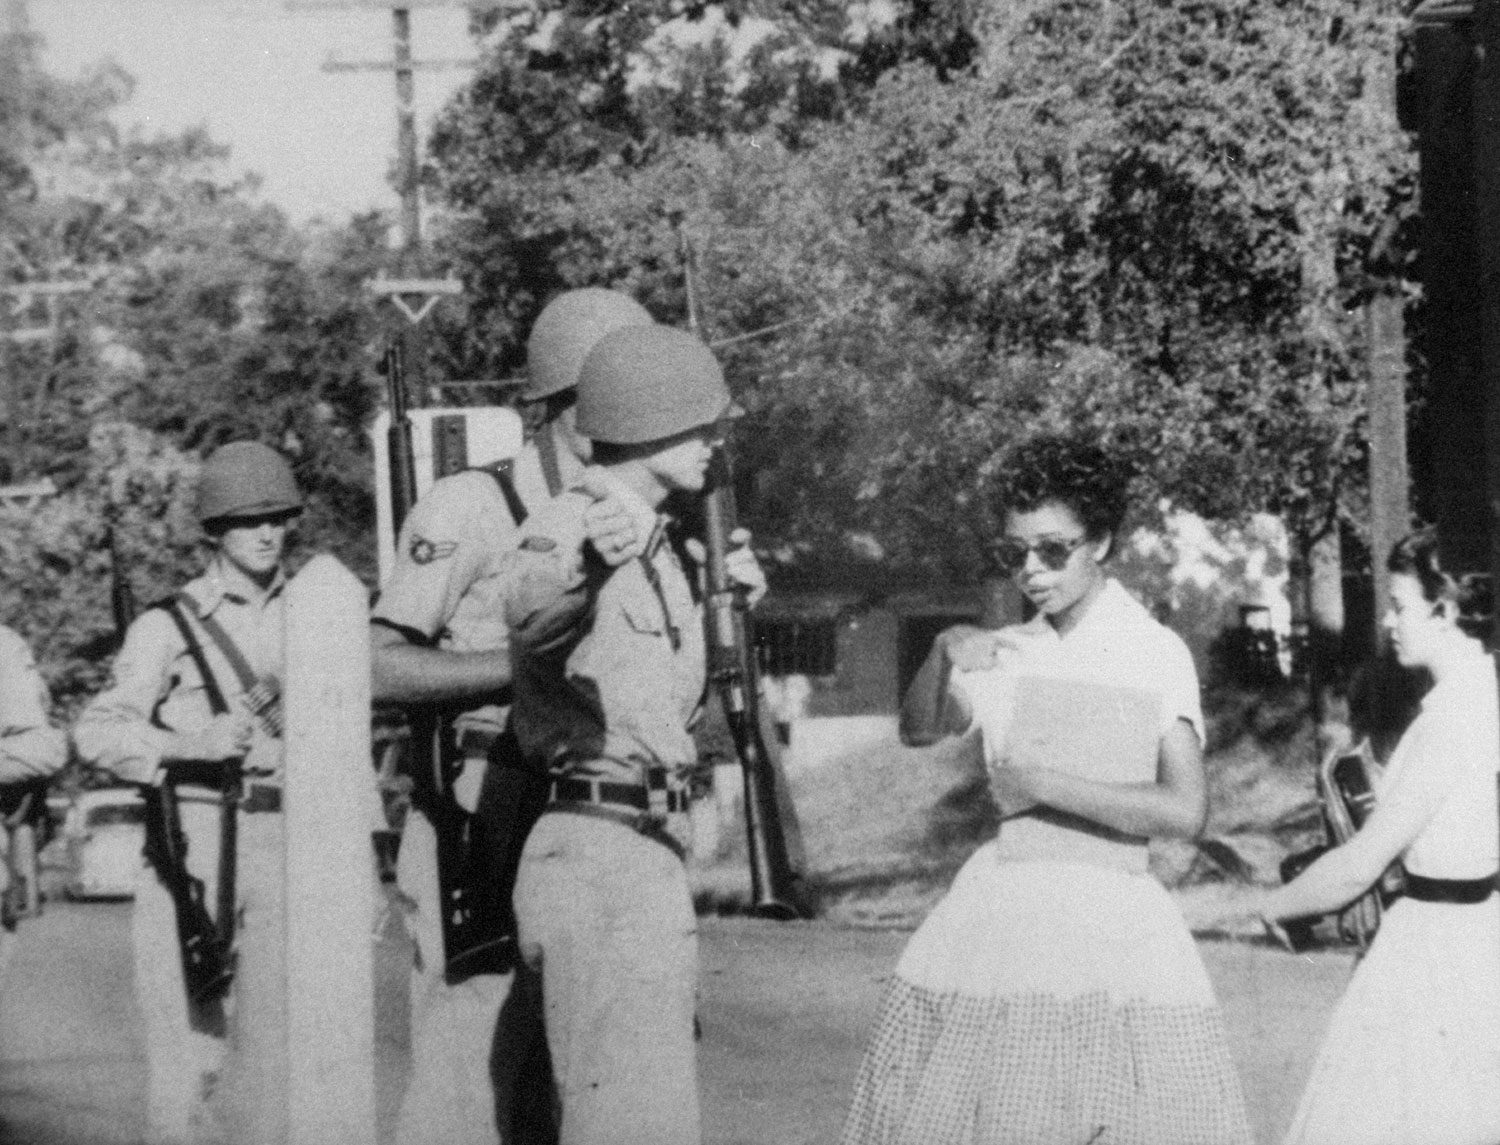 Elizabeth Eckford, one of the Little Rock Nine, is waved off school grounds by Arkansas National Guardsmen, September, 1957.